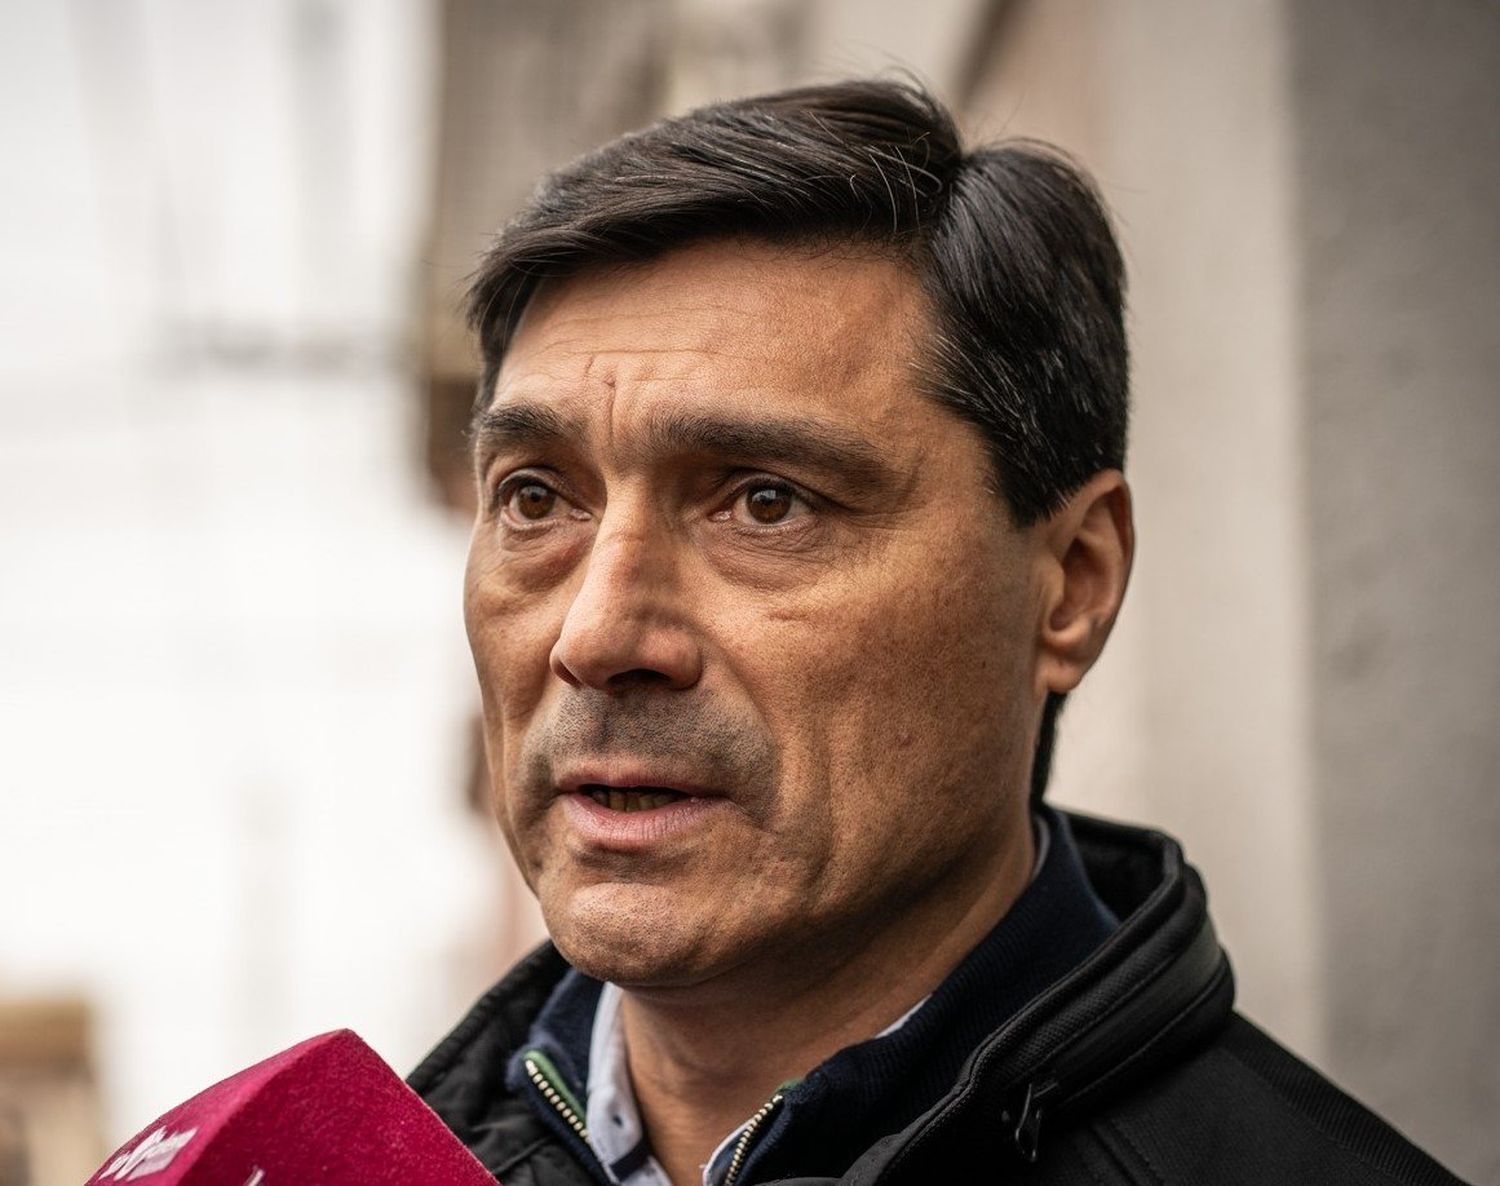 El diputado electo Ansaloni se distanció de La Libertad Avanza: “El límite es Macri”